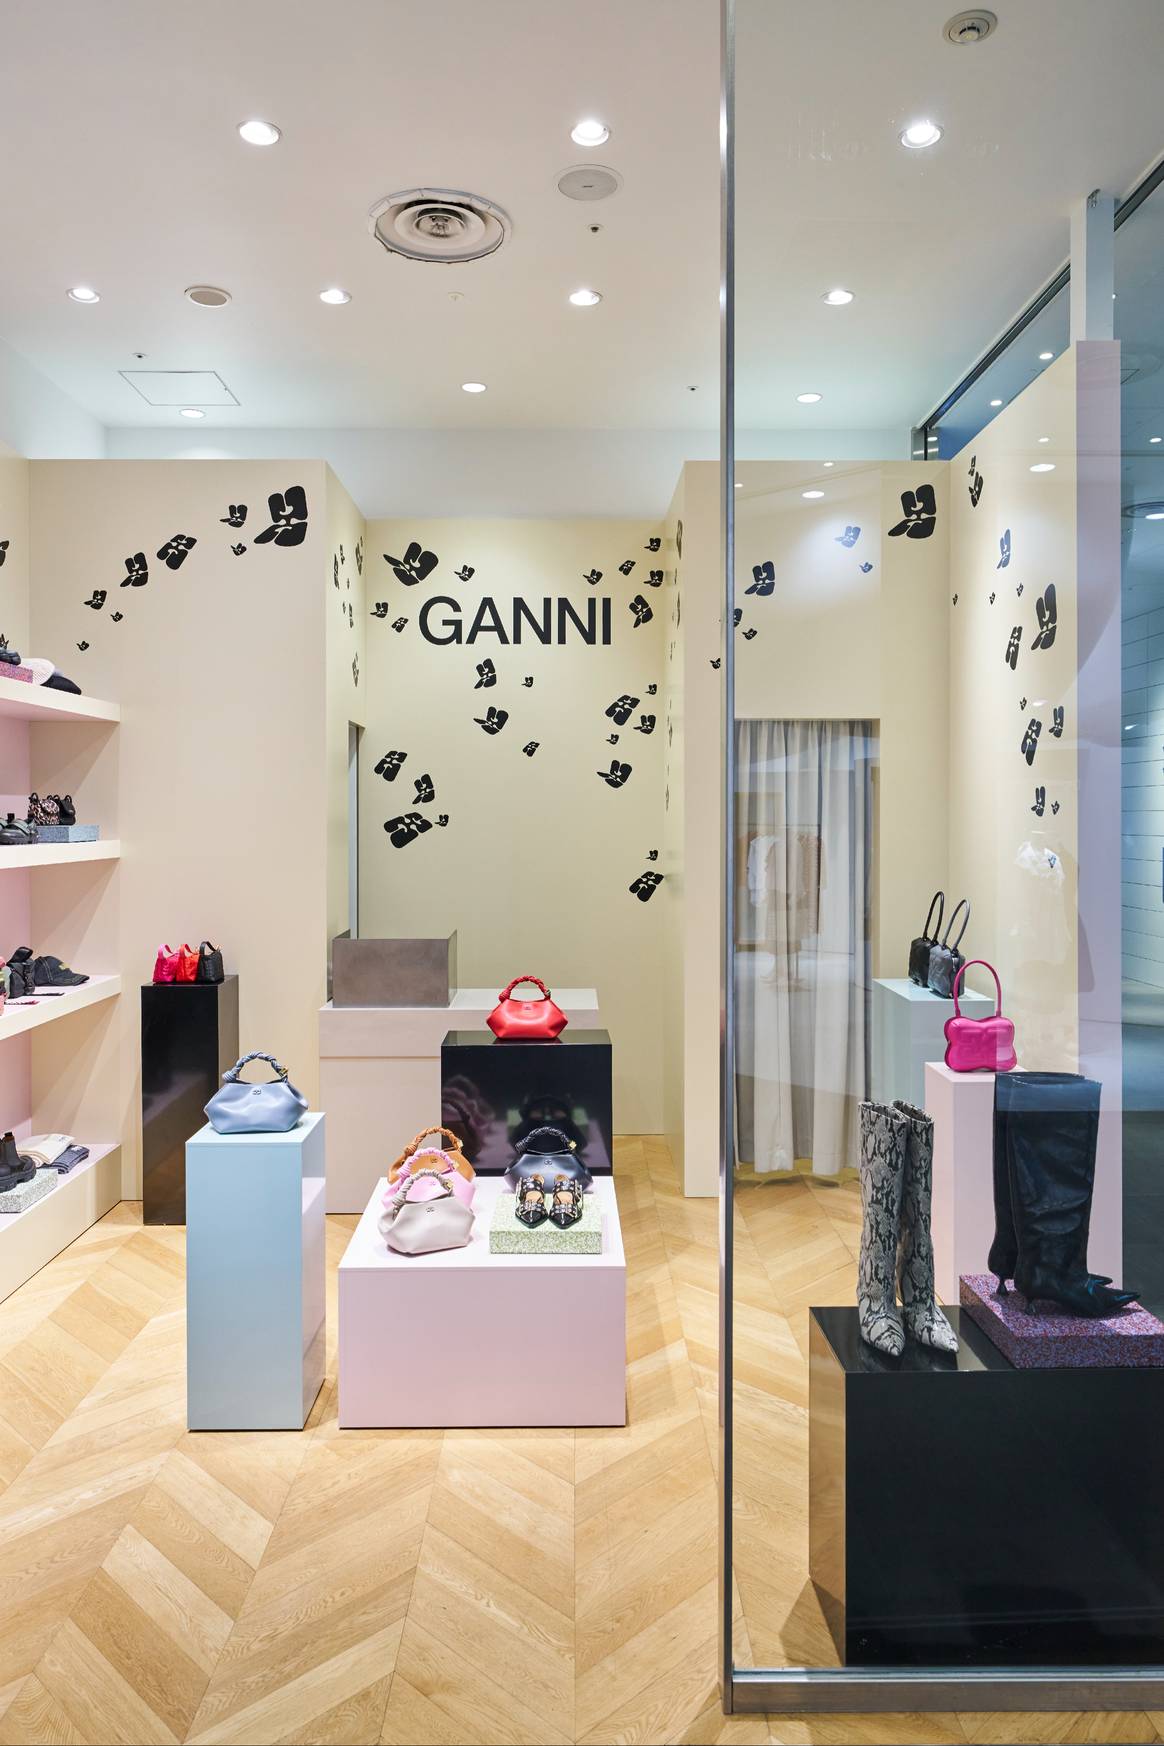 Ganni's pop-up store in Tokyo.